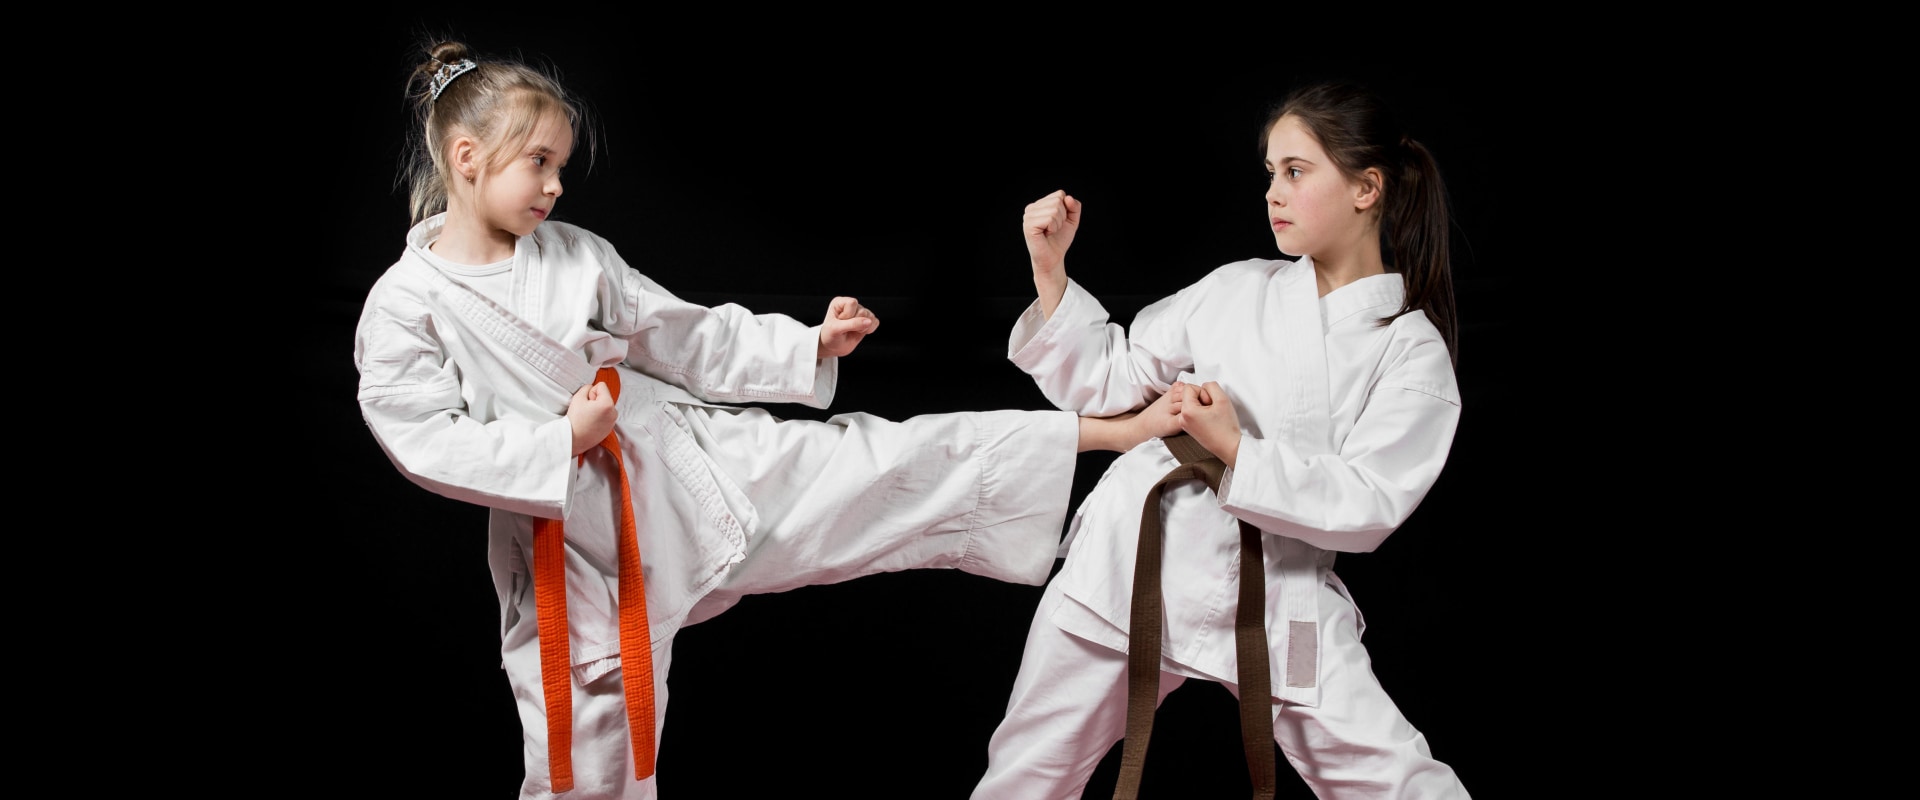 Is Taekwondo an Effective Mixed Martial Art?